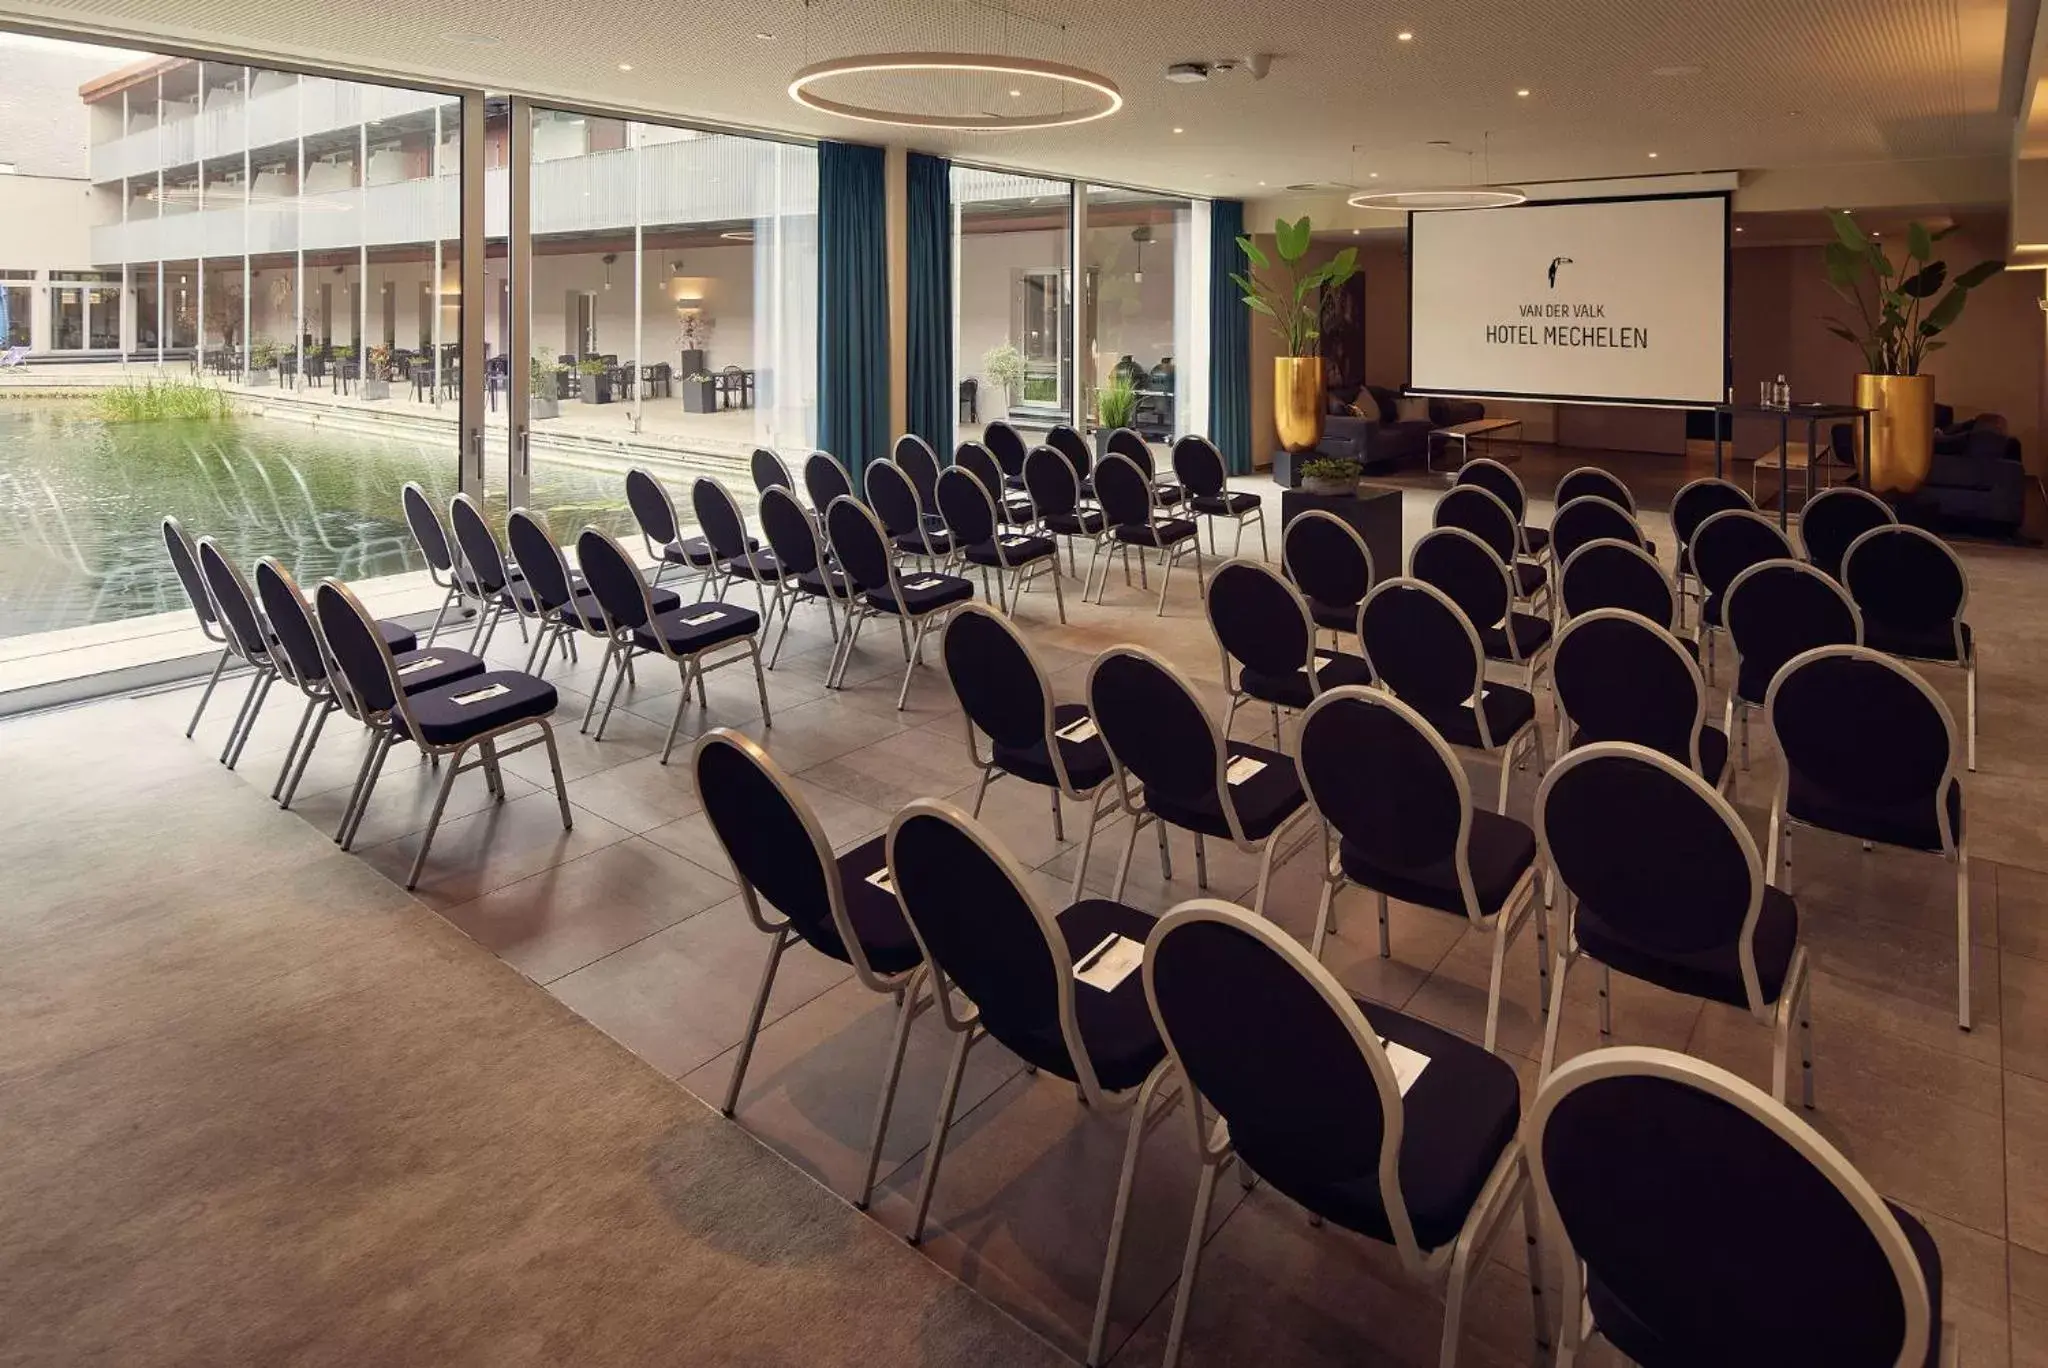 Meeting/conference room in Van der Valk Hotel Mechelen